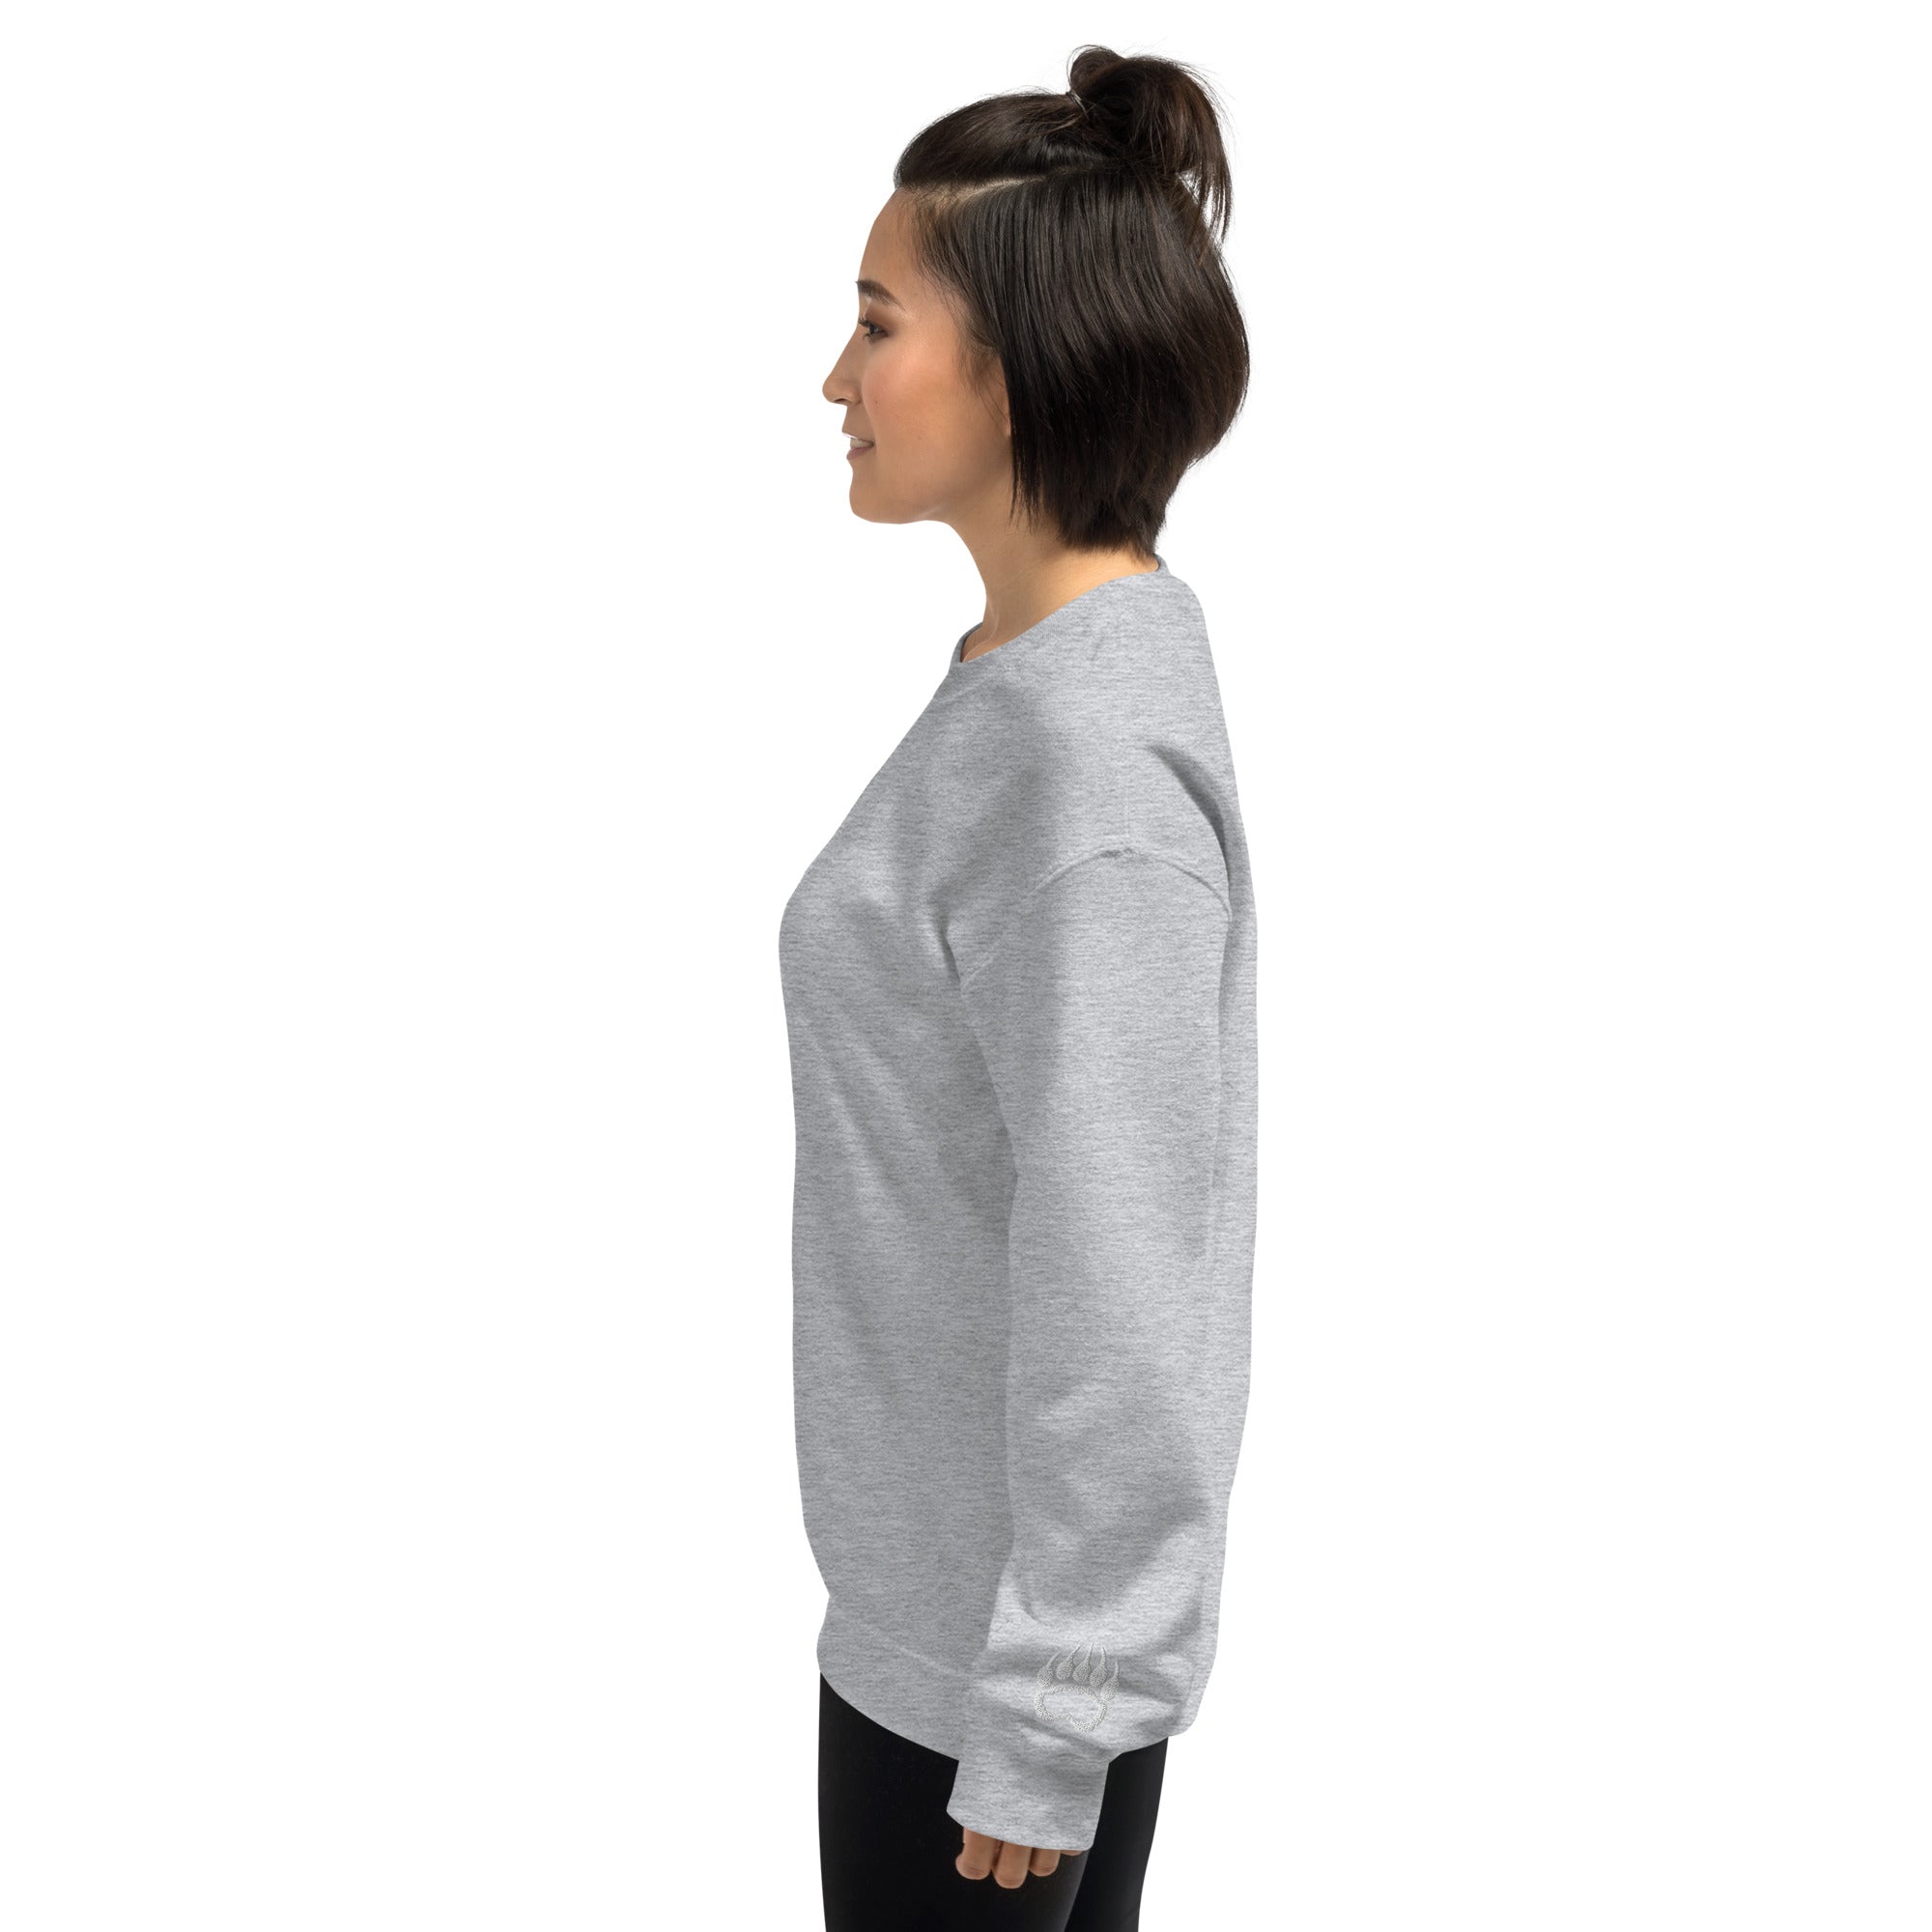 Women's SICBEAR Sweatshirt with Left Wrist Logo